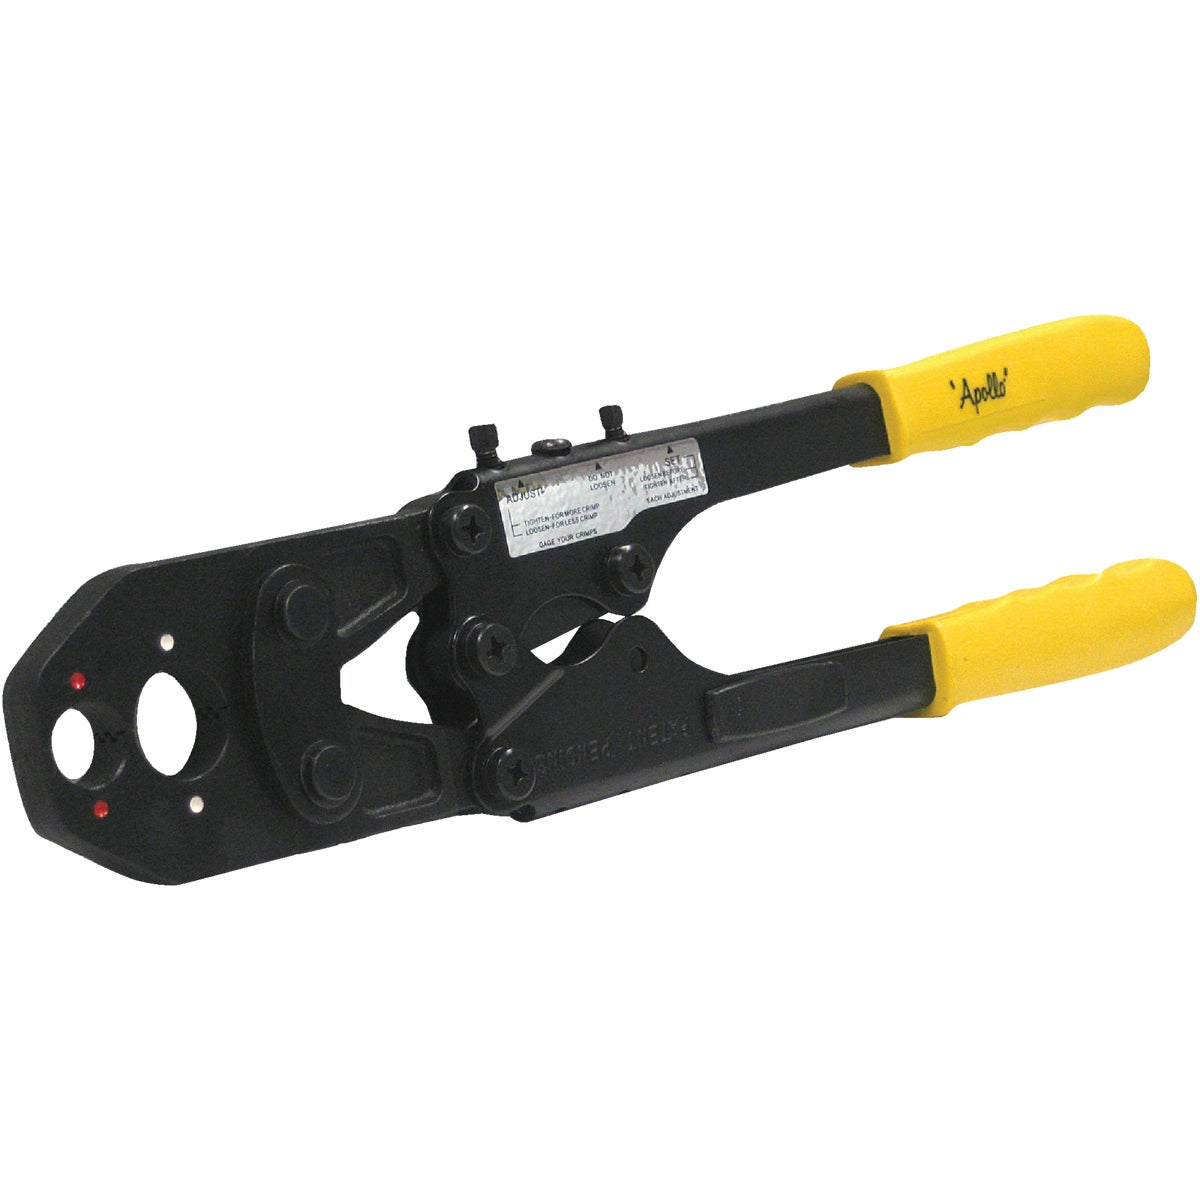 Item 400353, 2-in-1 PEX combination crimp ring tool.